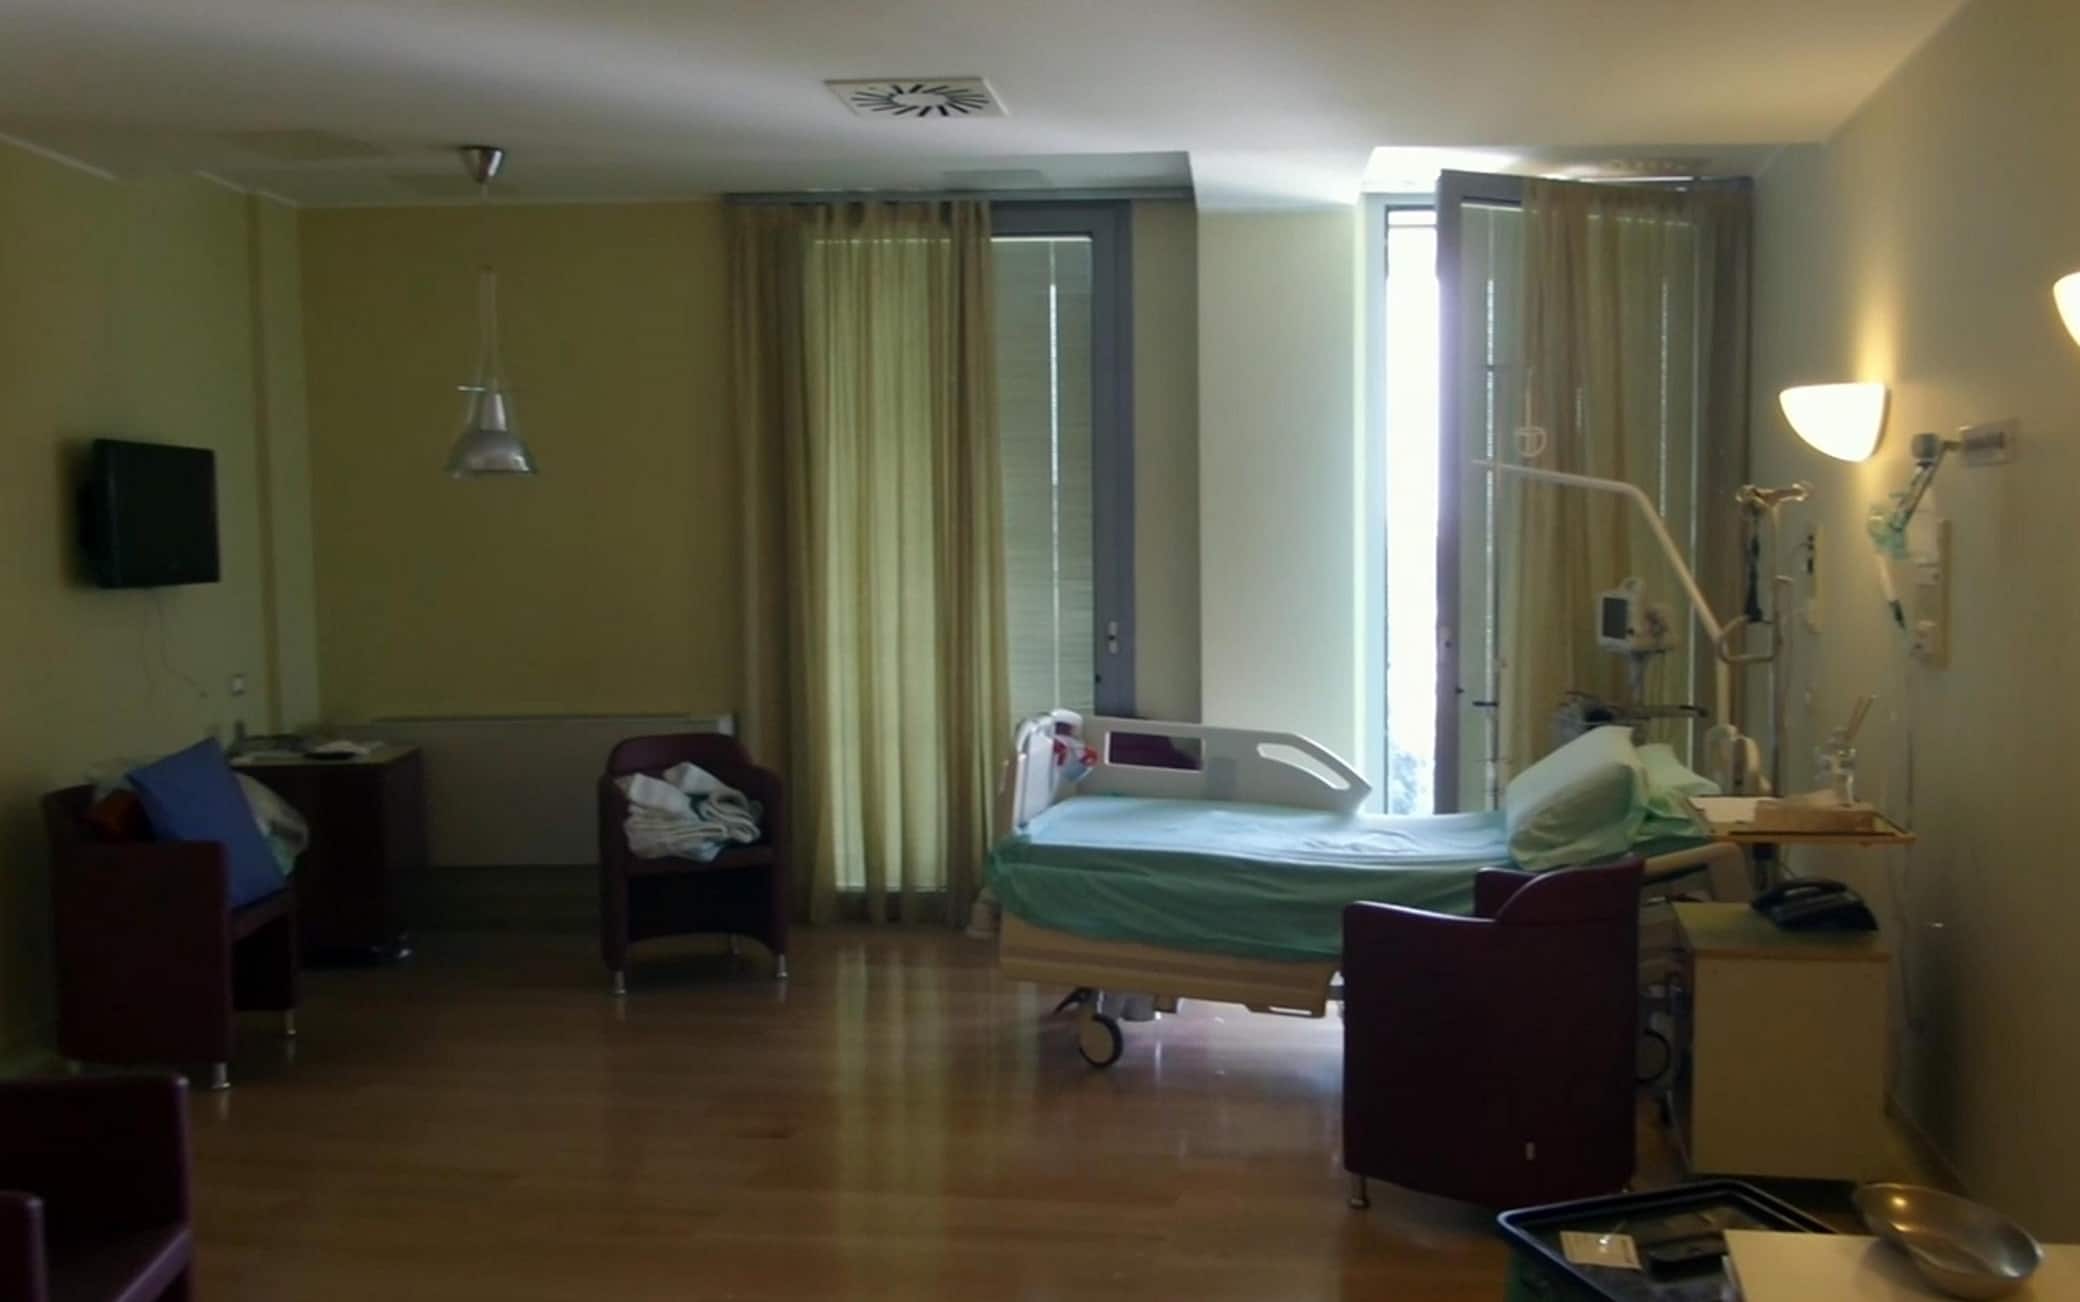 Un fermo immagine tratto da un video di Alanews mostra la stanza del leader di Forza Italia Silvio Berlusconi all'ospedale San Raffaele dove era ricoverato dal 7 giugno scorso per un intervento di sostituzione della valvola aortica a Milano, 5 luglio 2016.
ANSA/ALANEWS